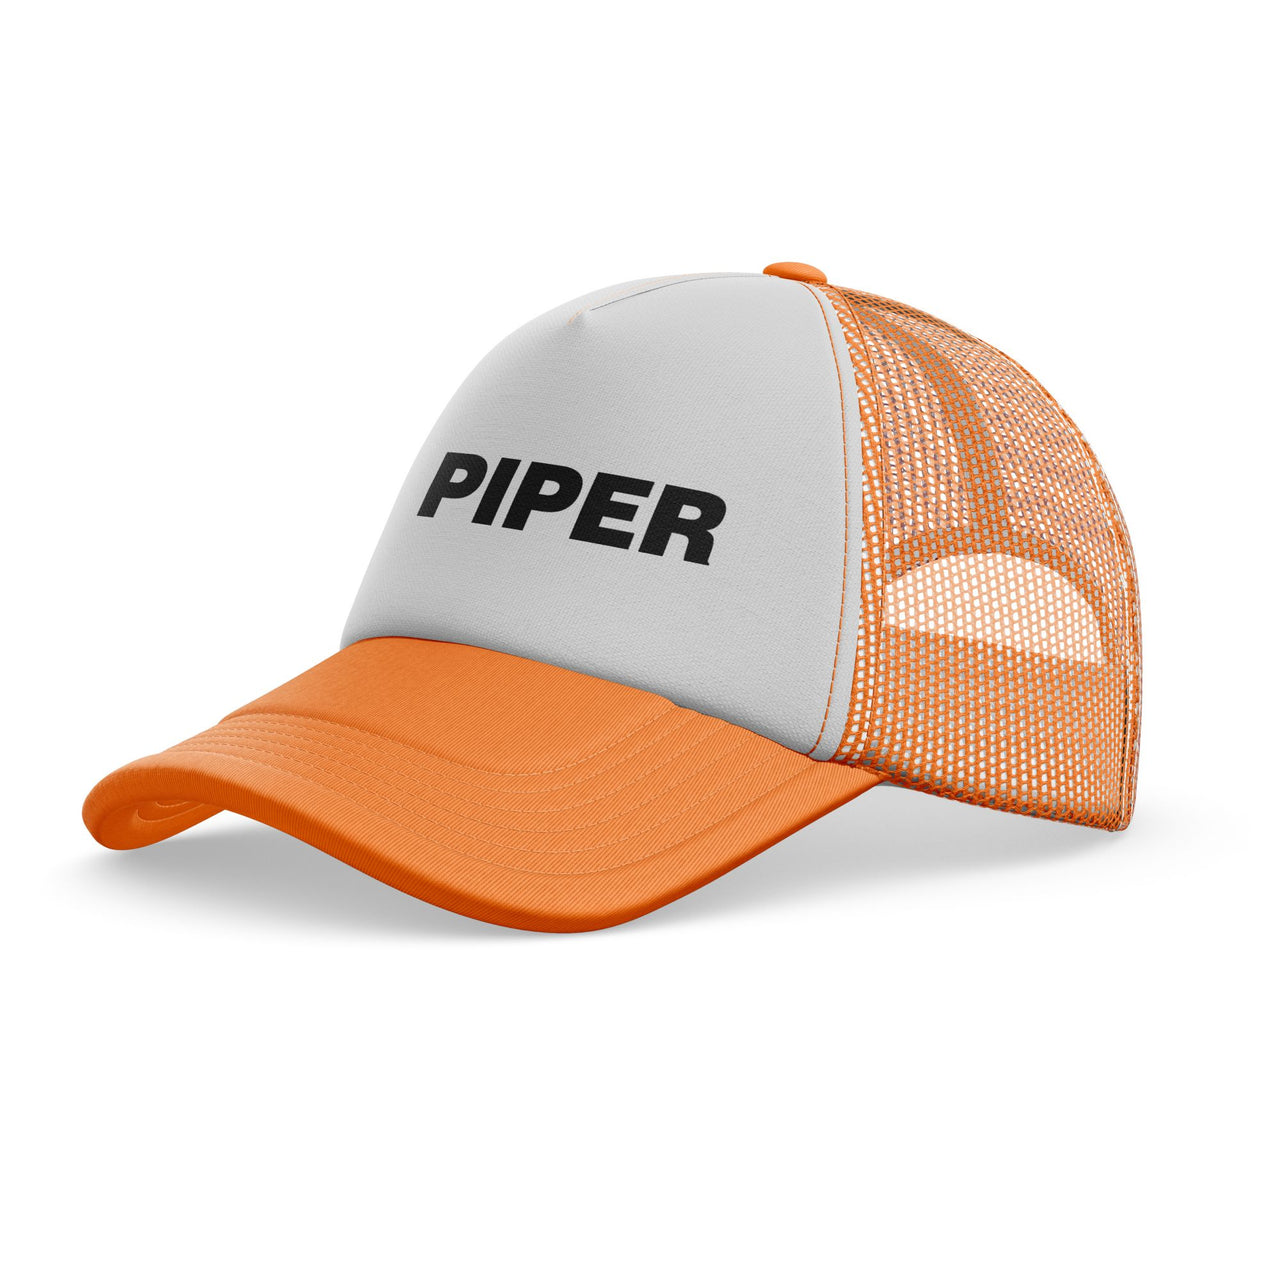 Piper & Text Designed Trucker Caps & Hats